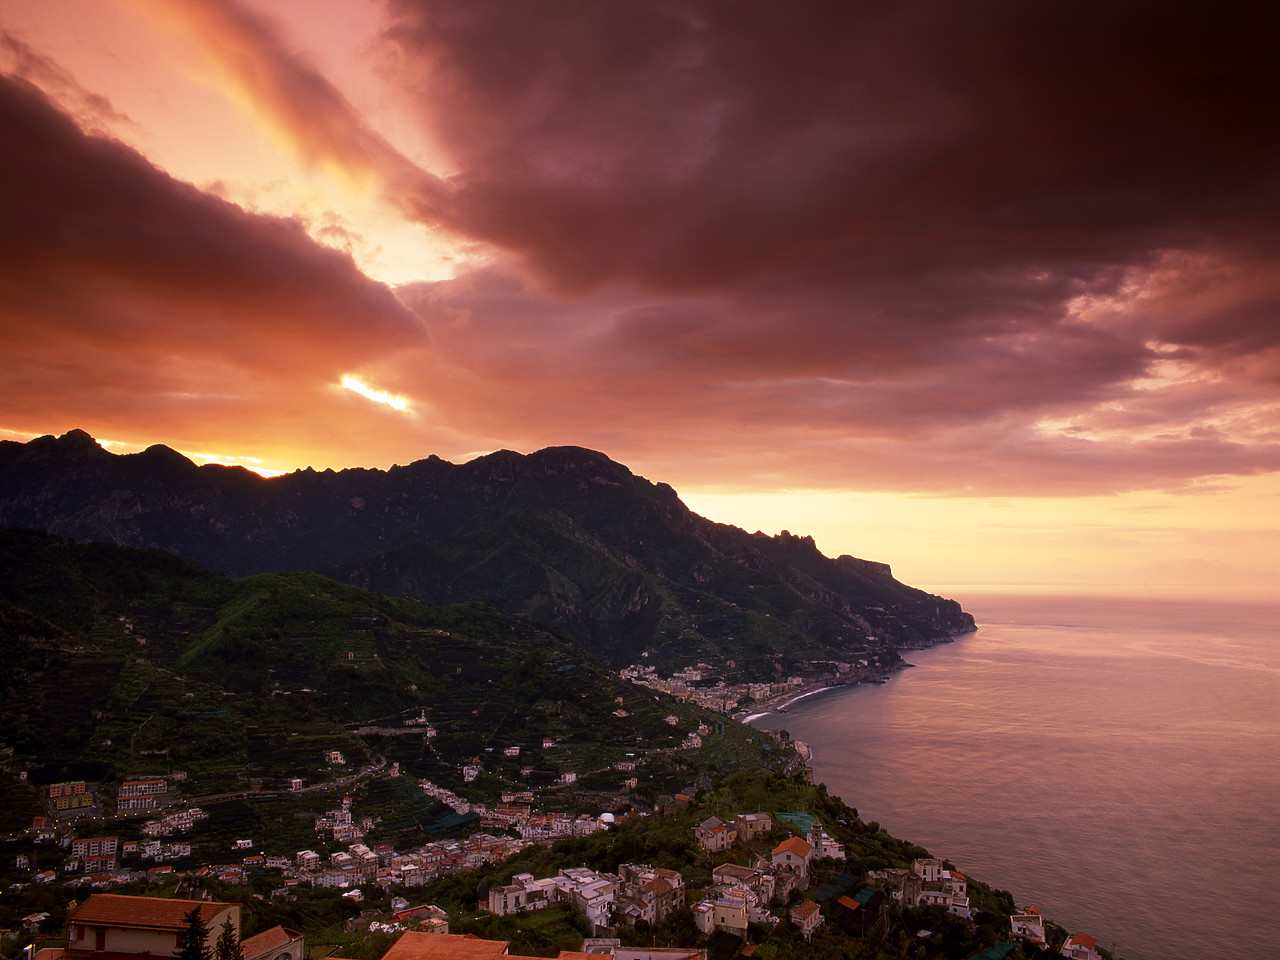 #040121-2 - Sunrise over Amalfi Coast, Ravello, Campania, Italy